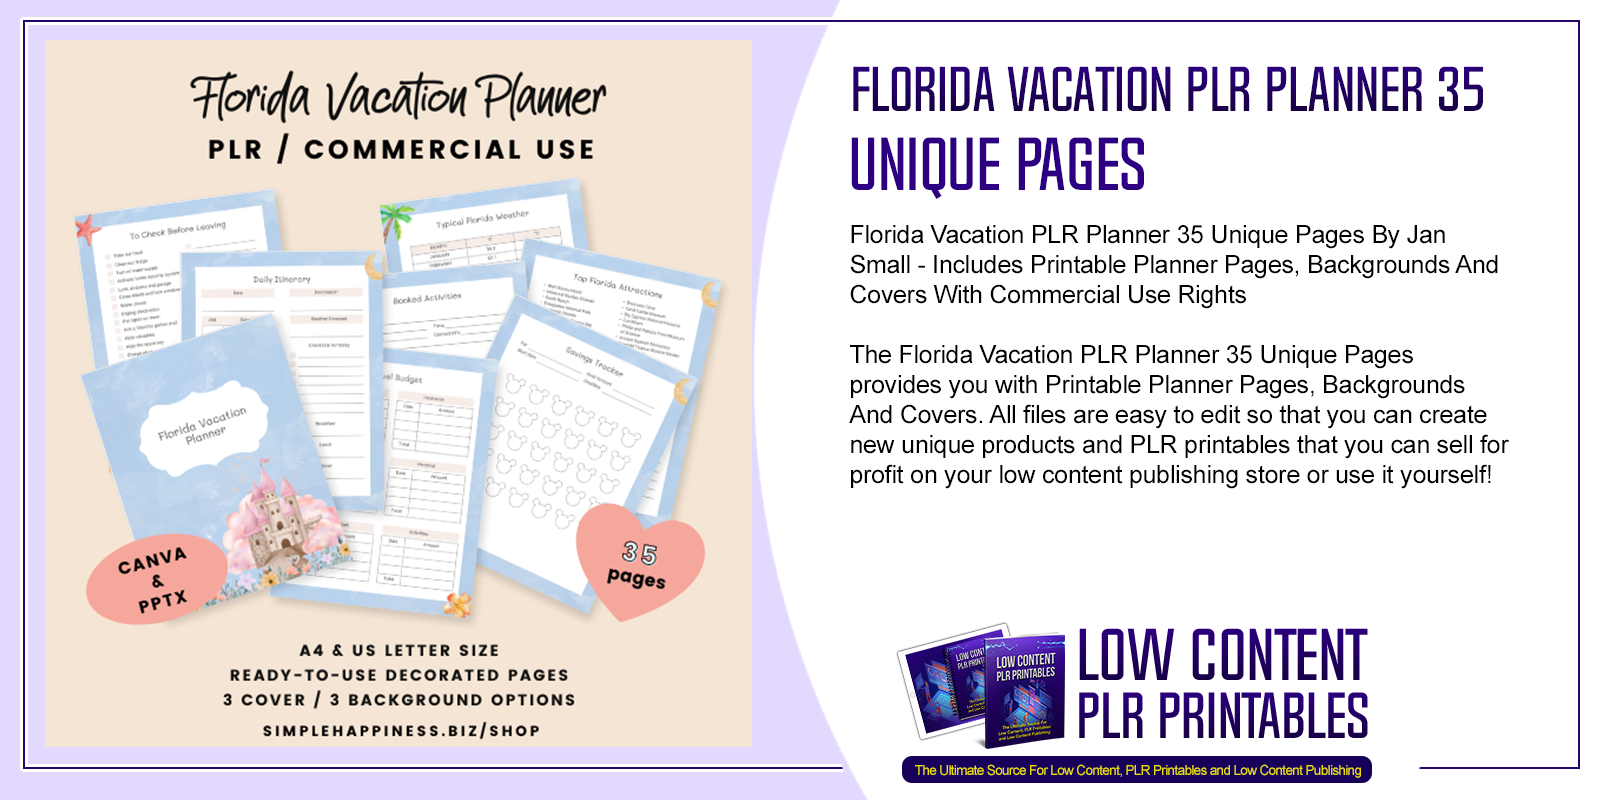 Florida Vacation PLR Planner 35 Unique Pages